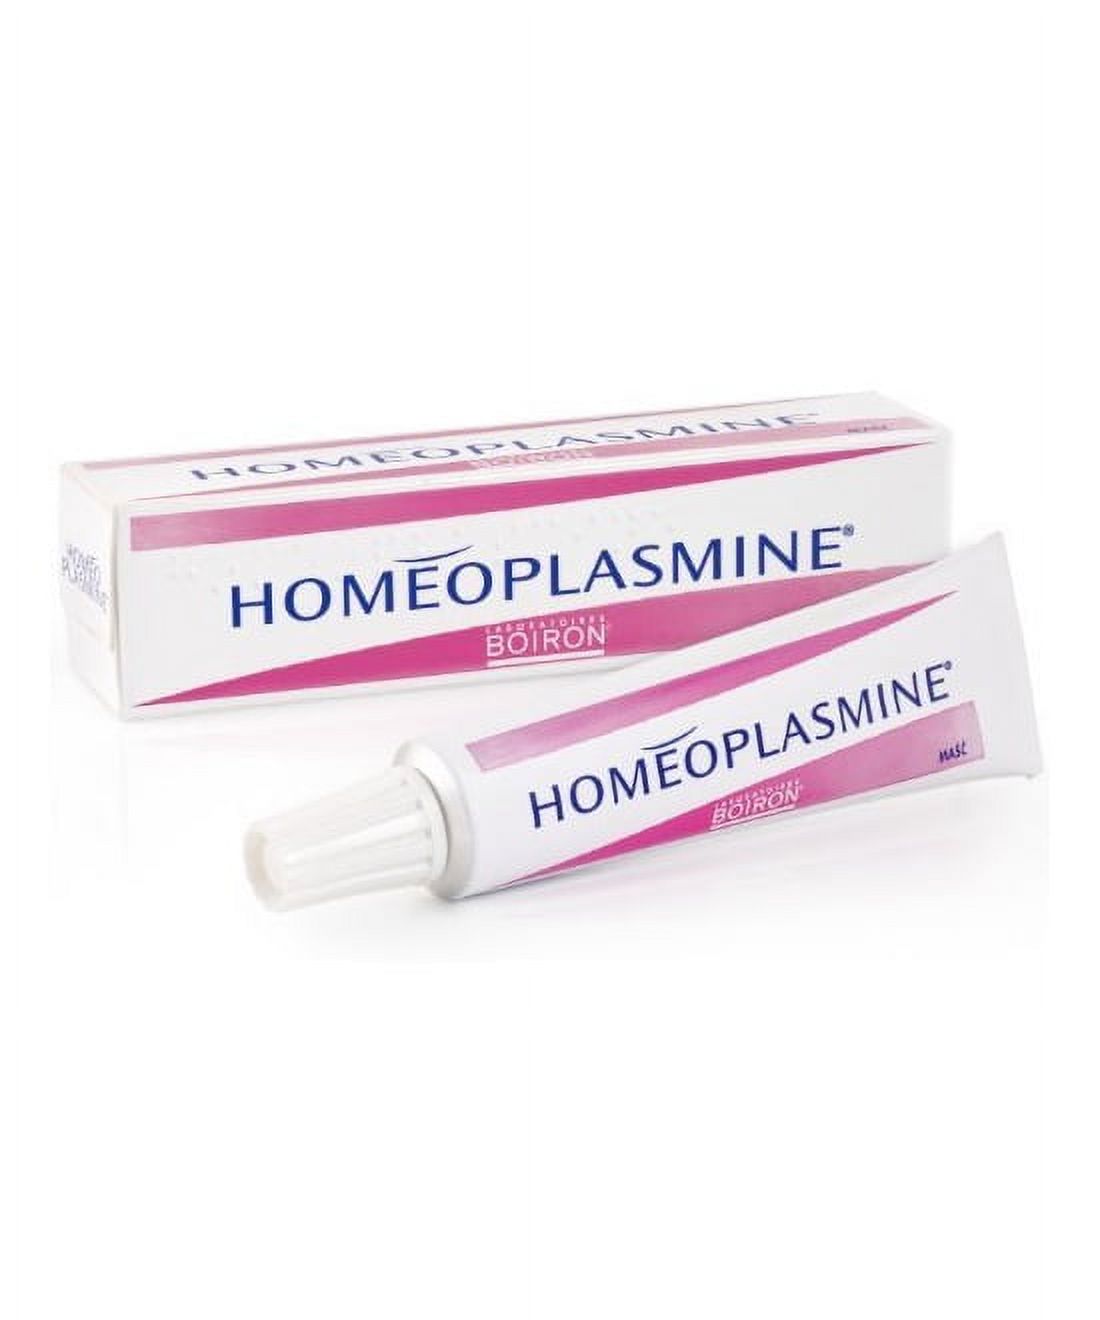 Homeoplasmine Extra Large 40g - image 1 of 2